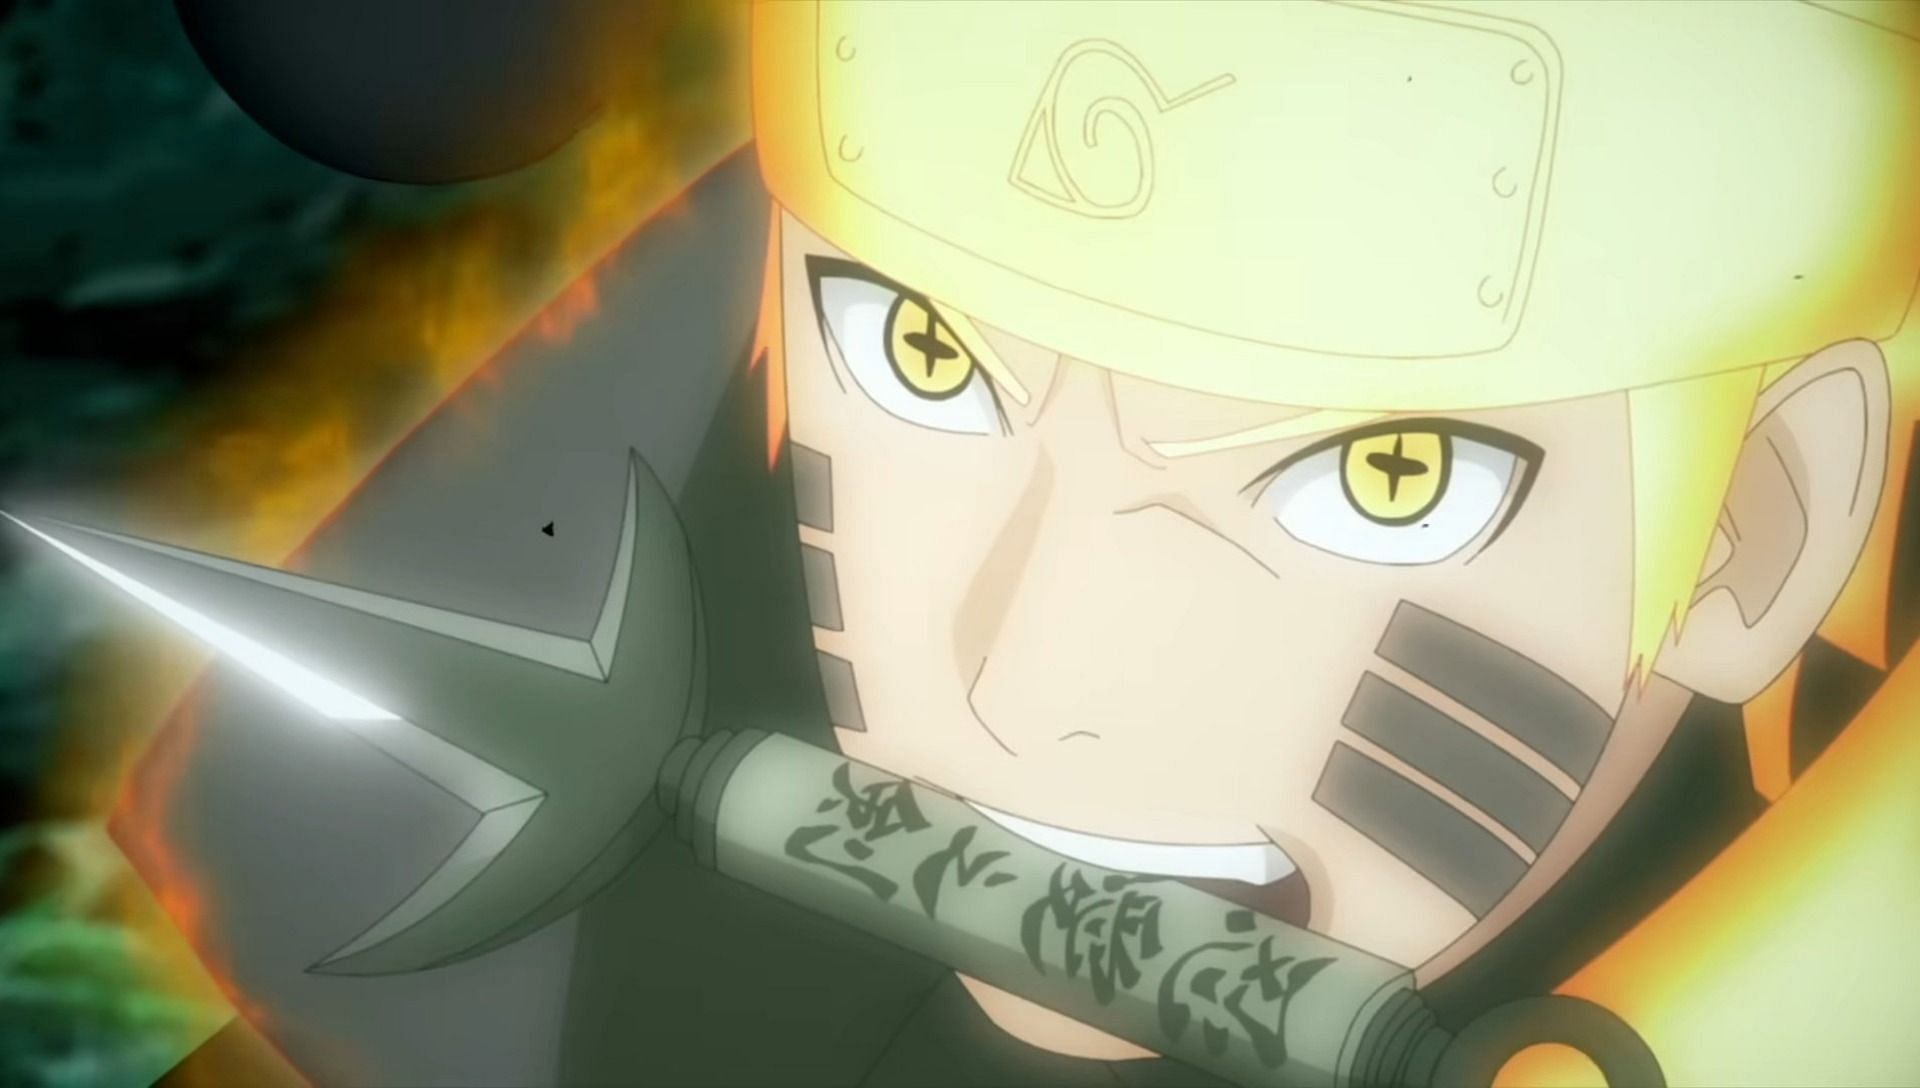 Naruto Uzumaki in Naruto Shippuden (Image via Pierrot)